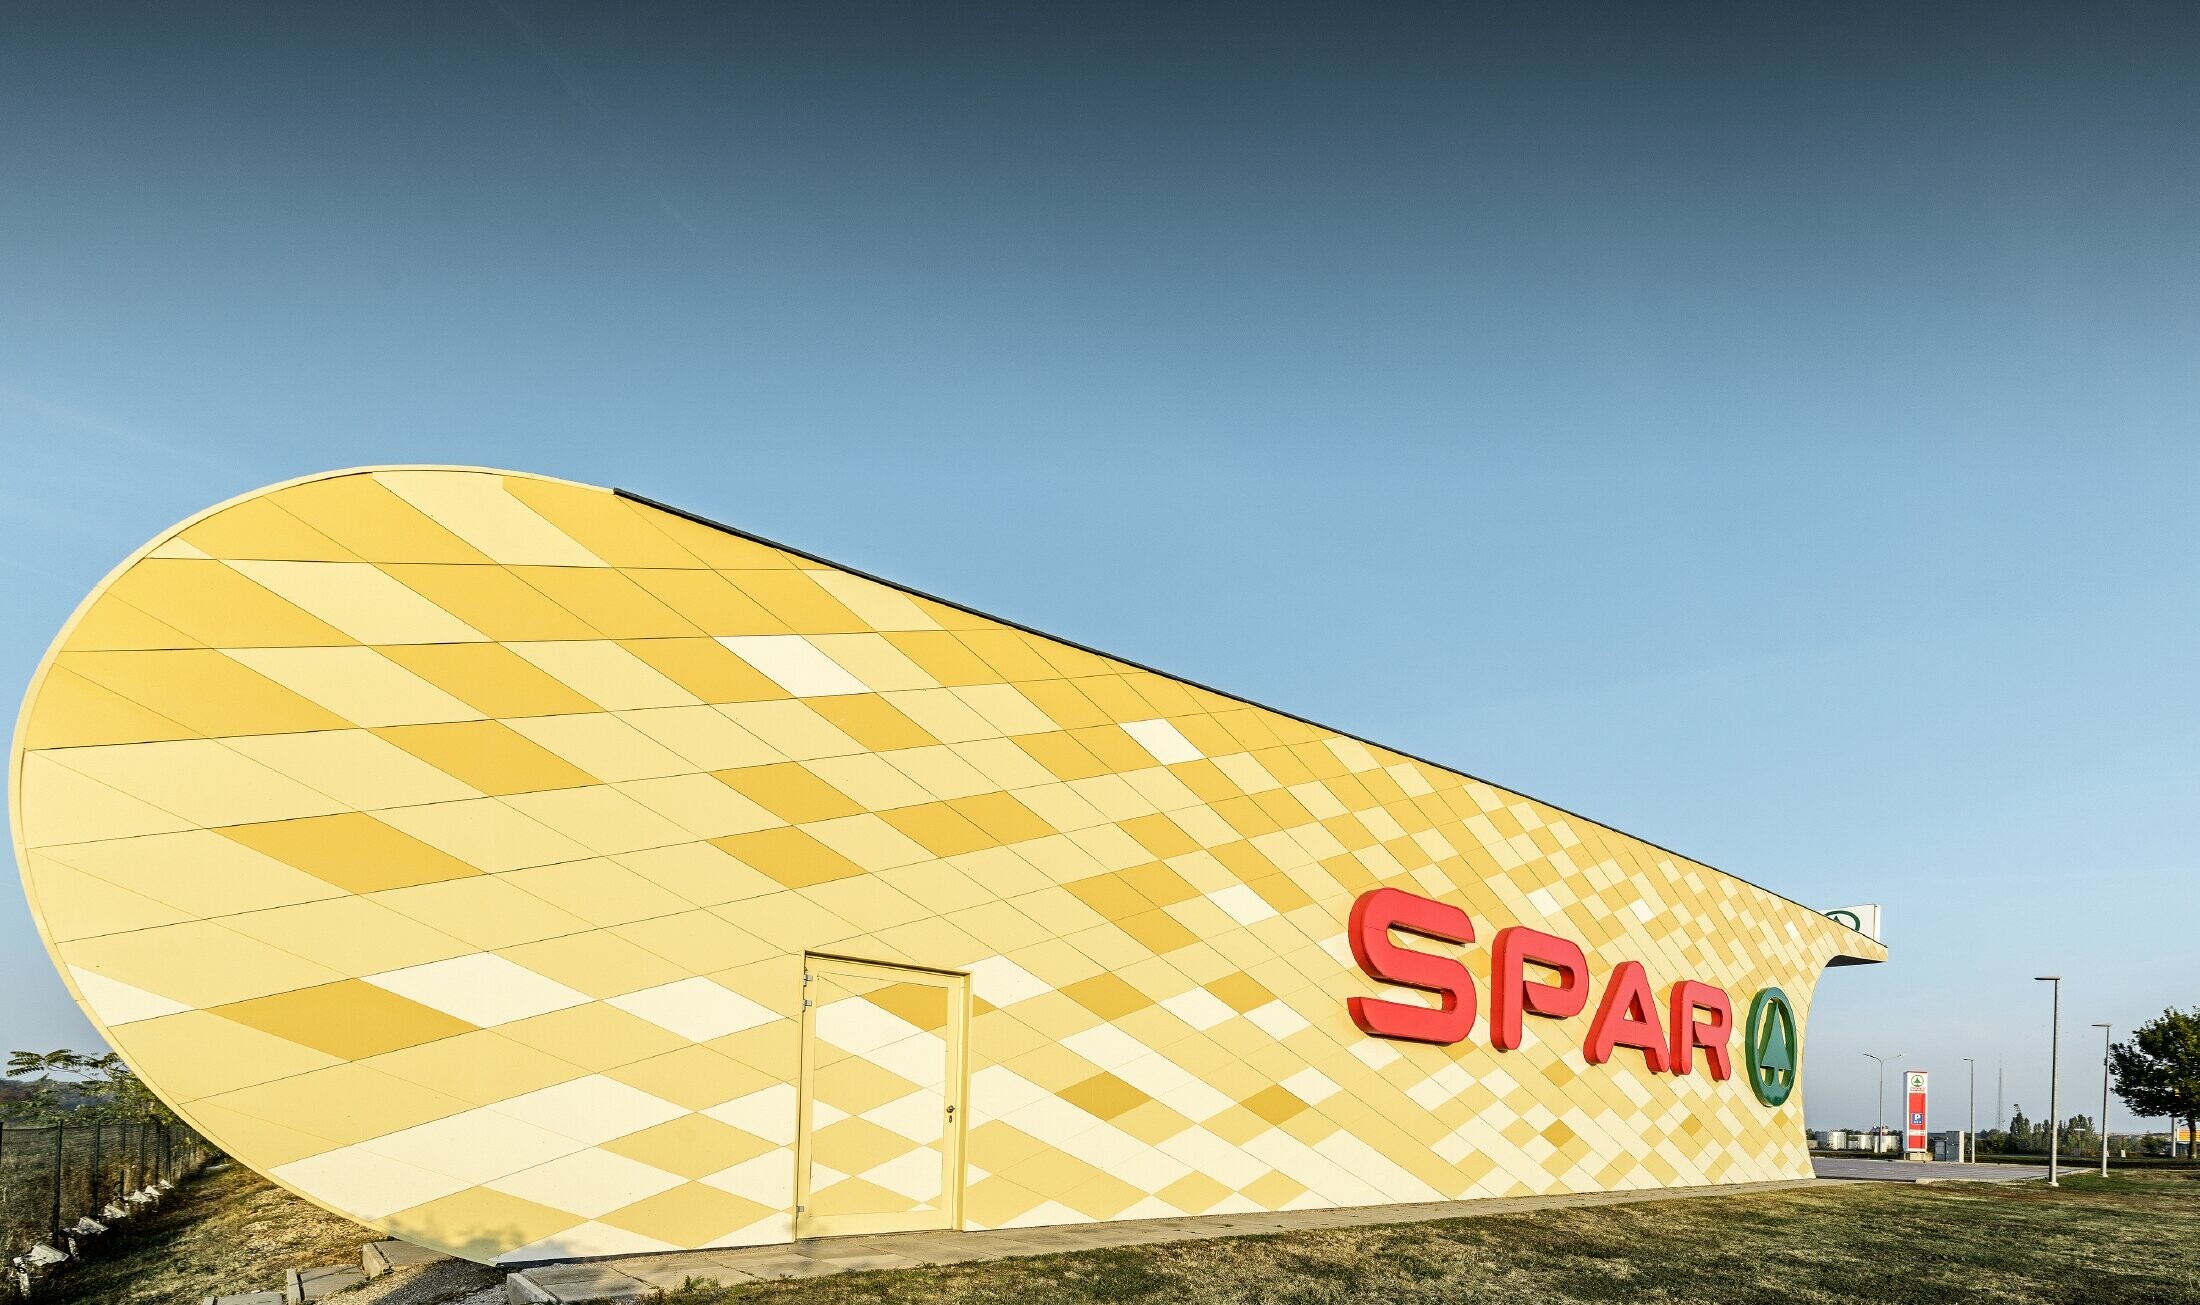 Poslovalnica Spar z aluminijasto fasado v rumeno-oranžnih karo vzorcih in logotipom Spar